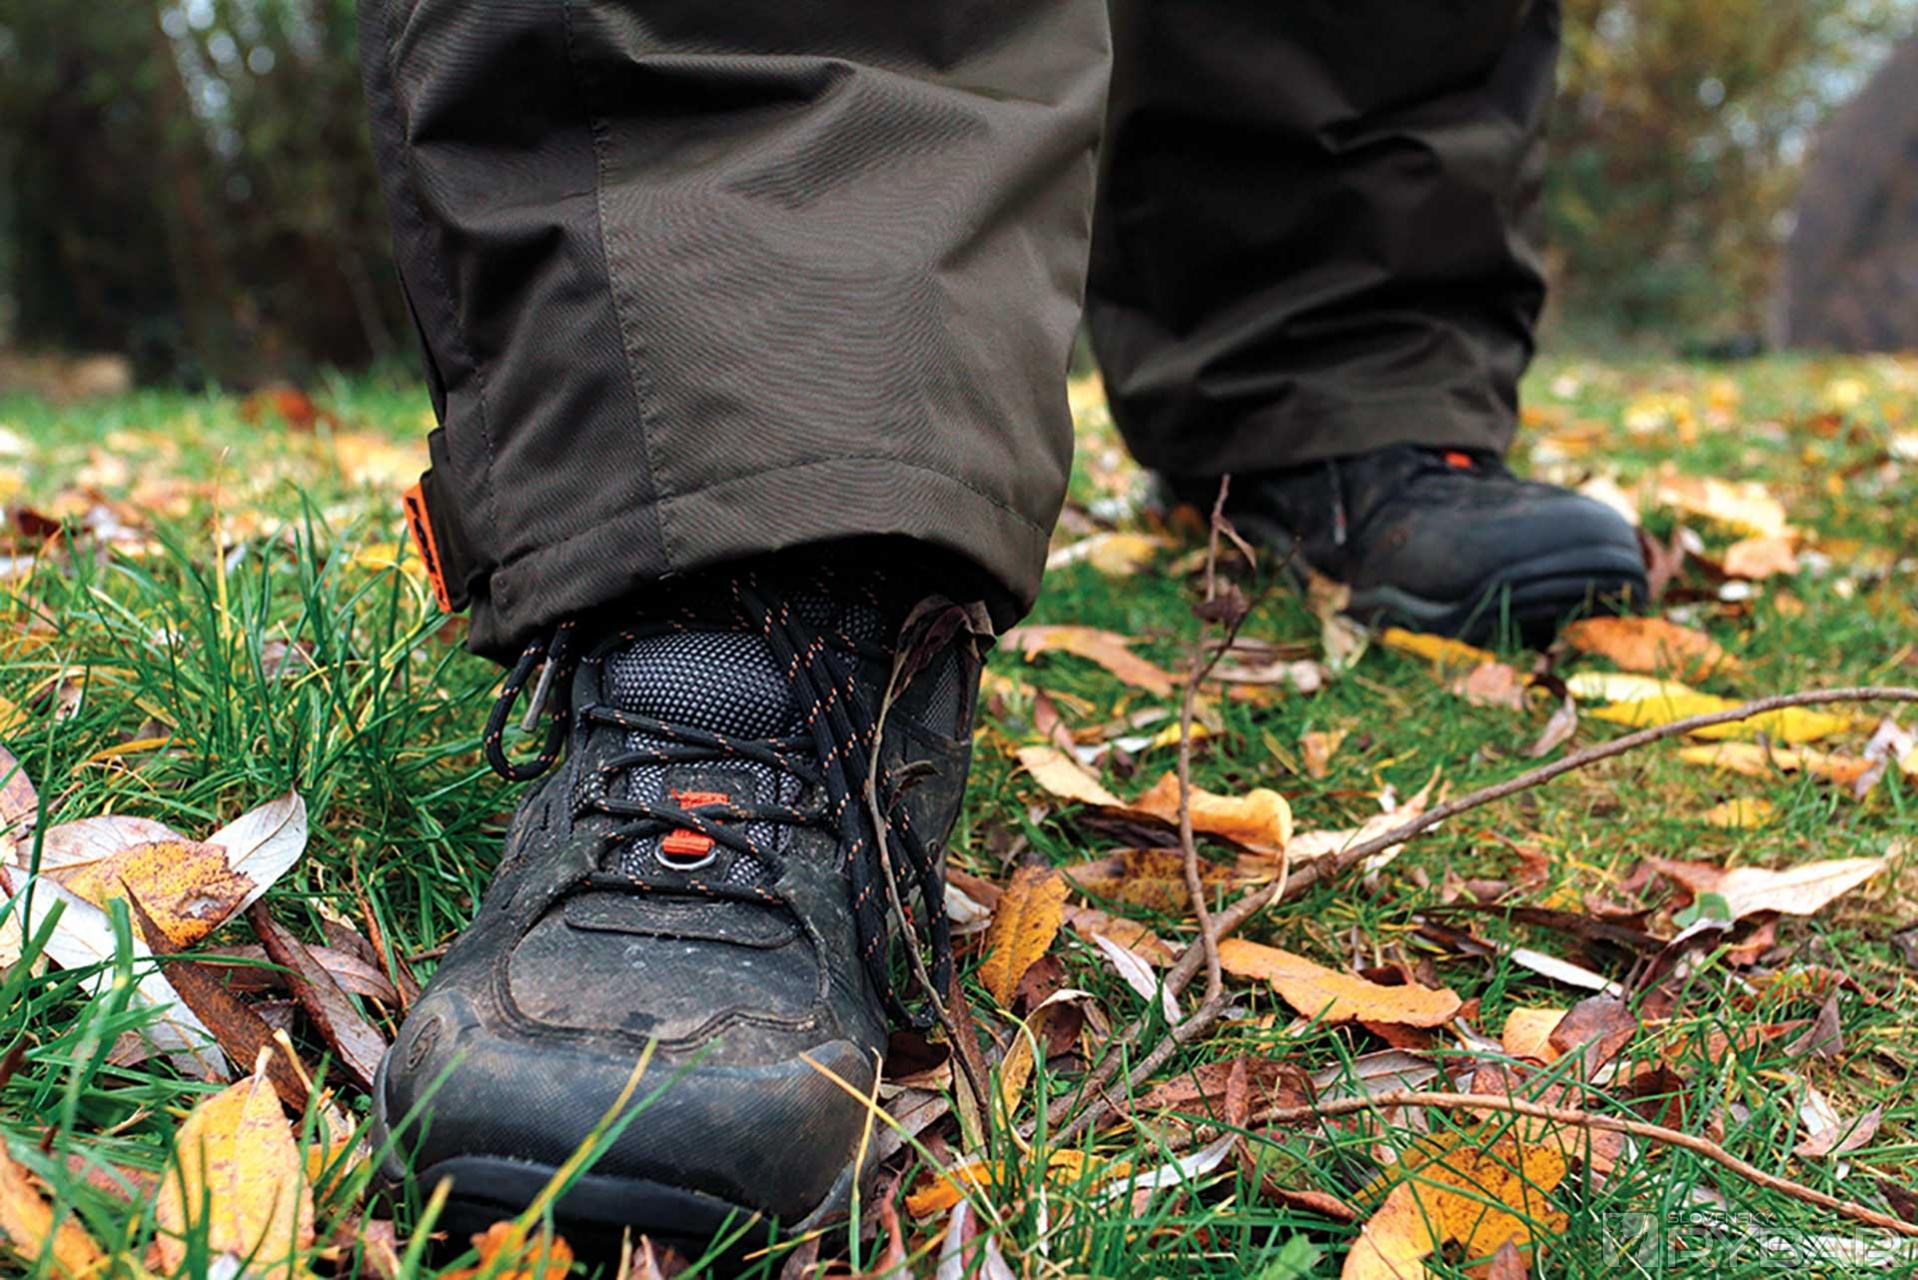 Topánky Explorer High Boots sú našim top modelom zimnej obuvi. Sú pohodlné, vode odolné a extrémne teplé.